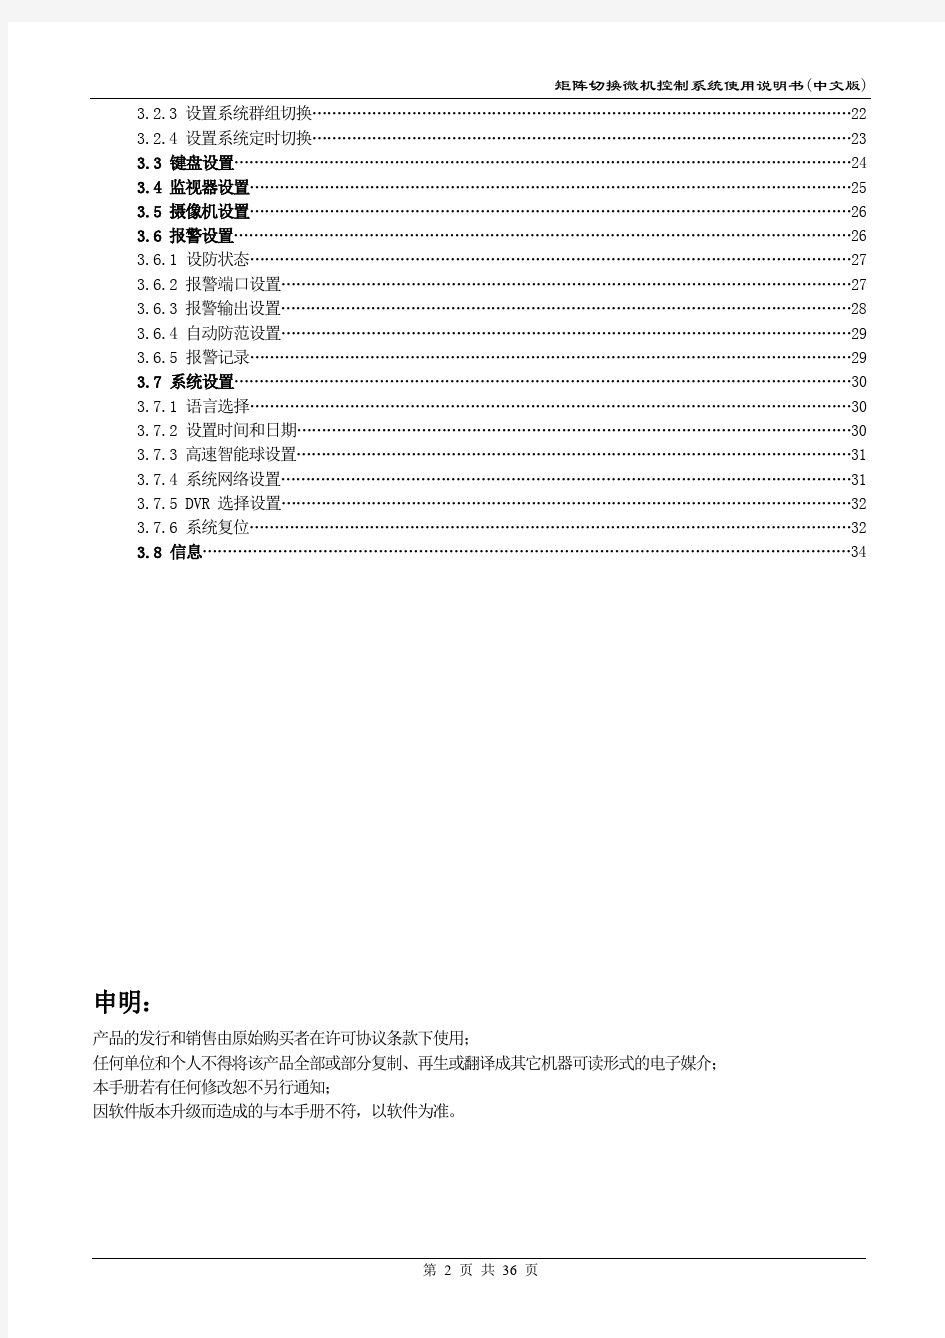 矩阵切换微机控制系统使用说明书(中文版)1